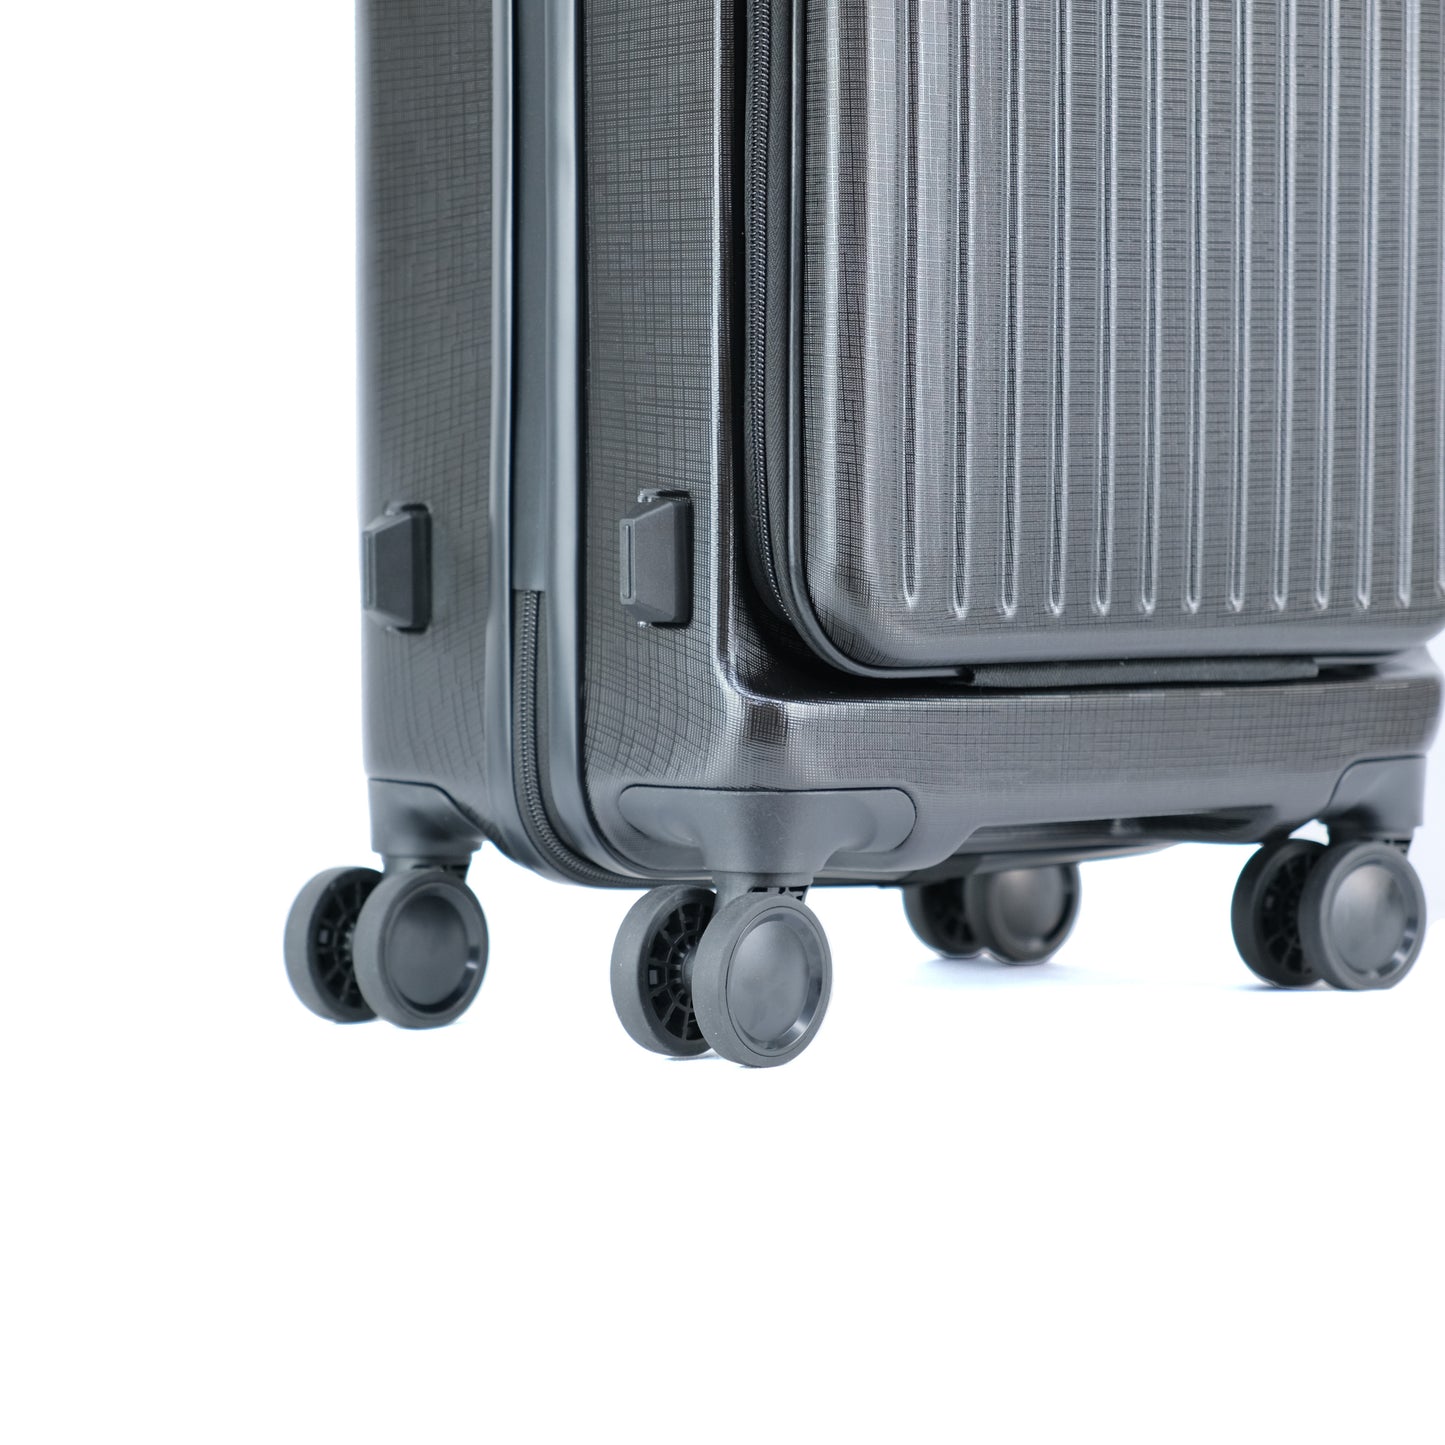 フロントポケット付きキャリーケース 機内持ち込み対応 TSAロック搭載 スーツケース